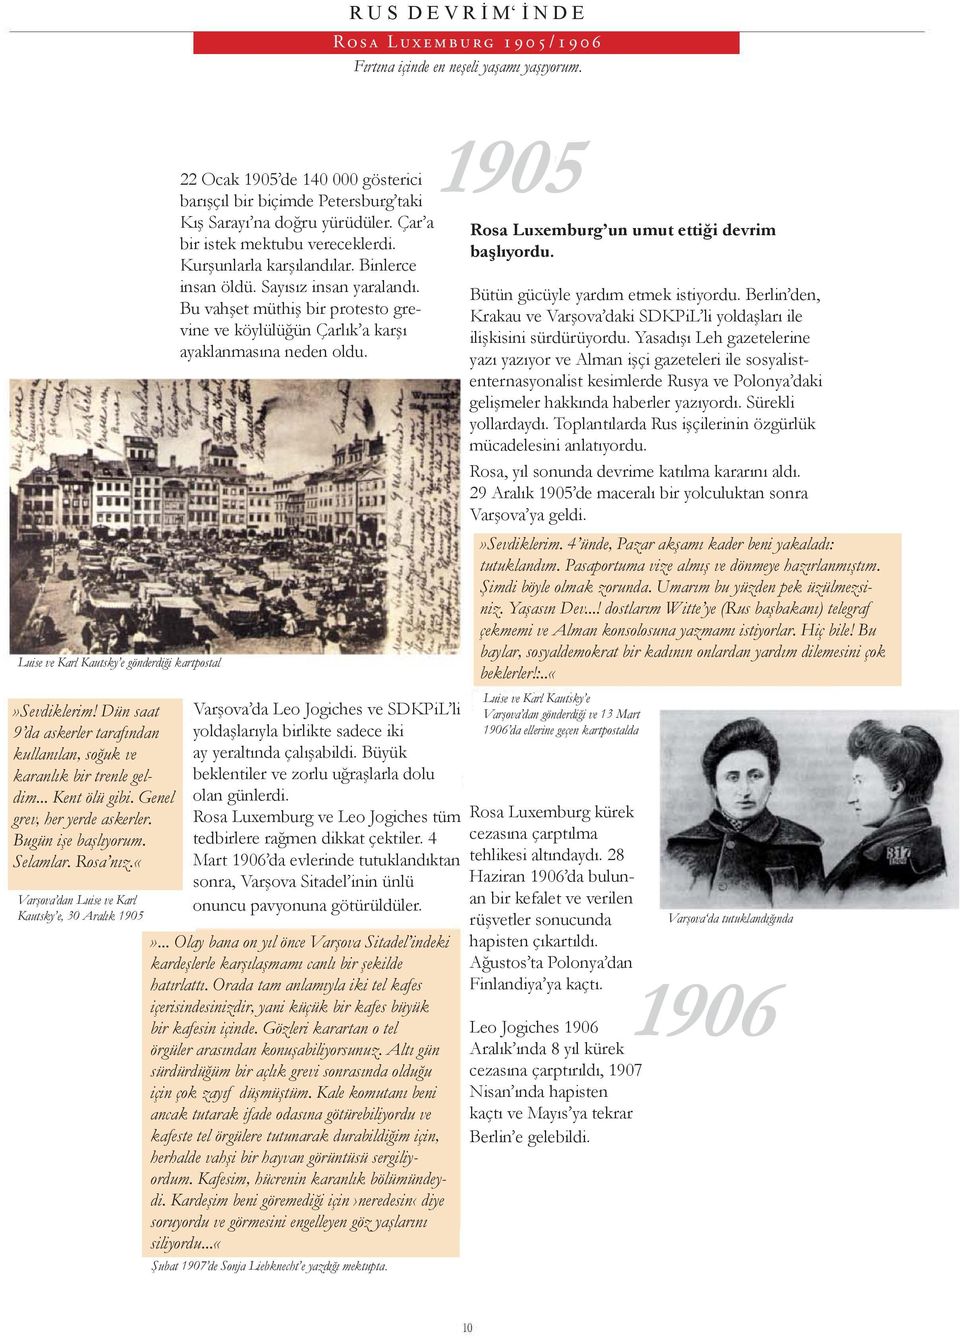 «varşova dan Luise ve Karl Kautsky e, 30 Aralık 1905 22 Ocak 1905 de 140 000 gösterici barışçıl bir biçimde Petersburg taki Kış Sarayı na doğru yürüdüler. Çar a bir istek mektubu vereceklerdi.